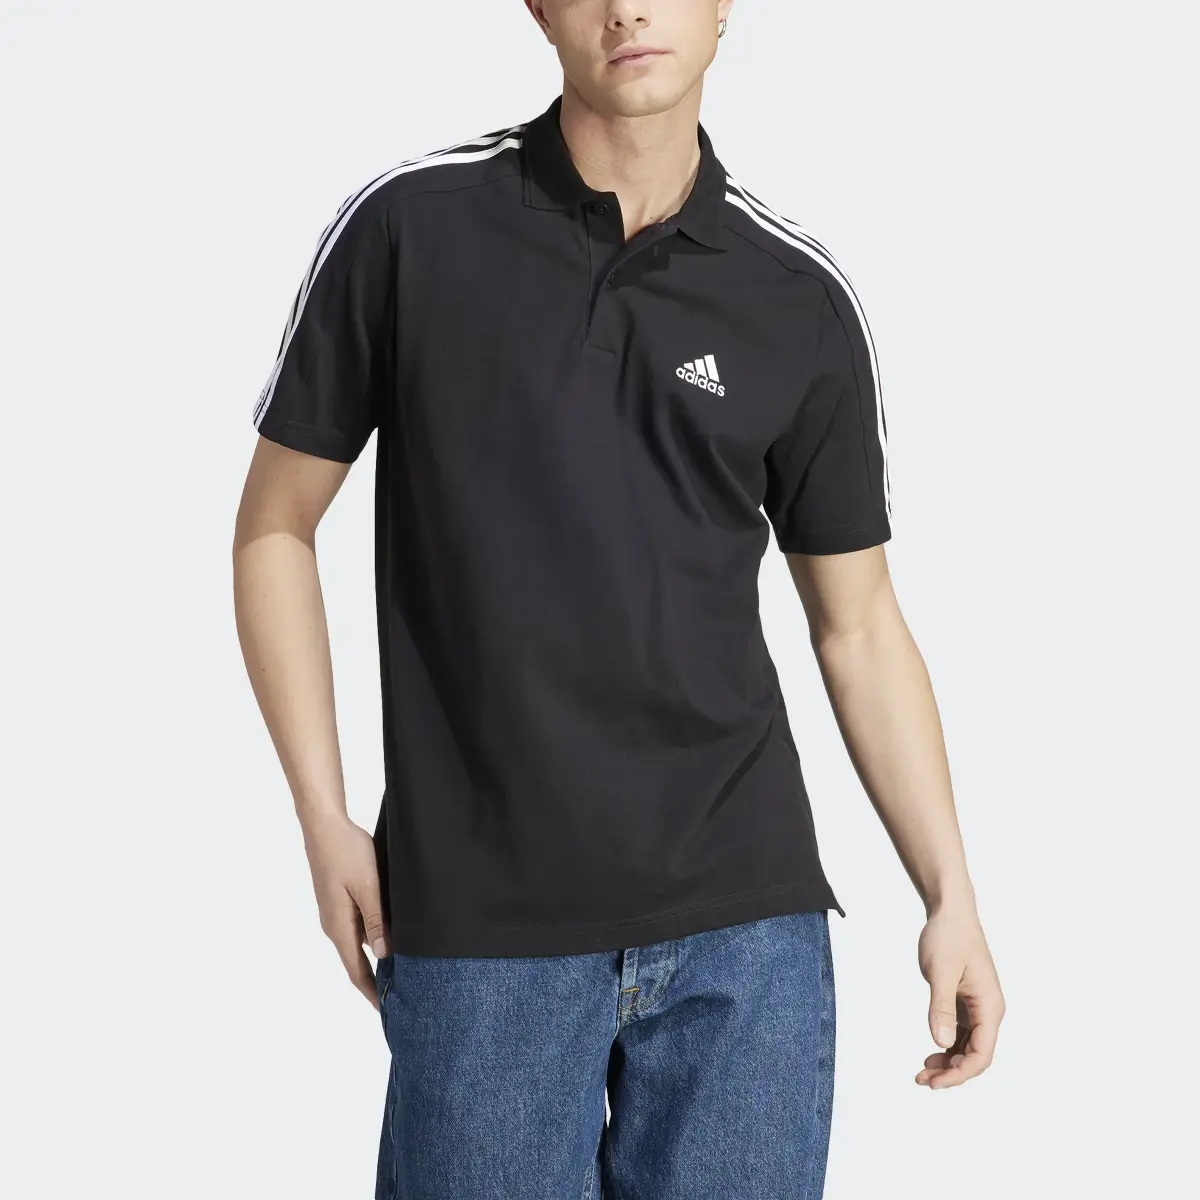 Adidas Essentials Piqué Embroidered Small Logo 3-Stripes Polo Shirt. 1